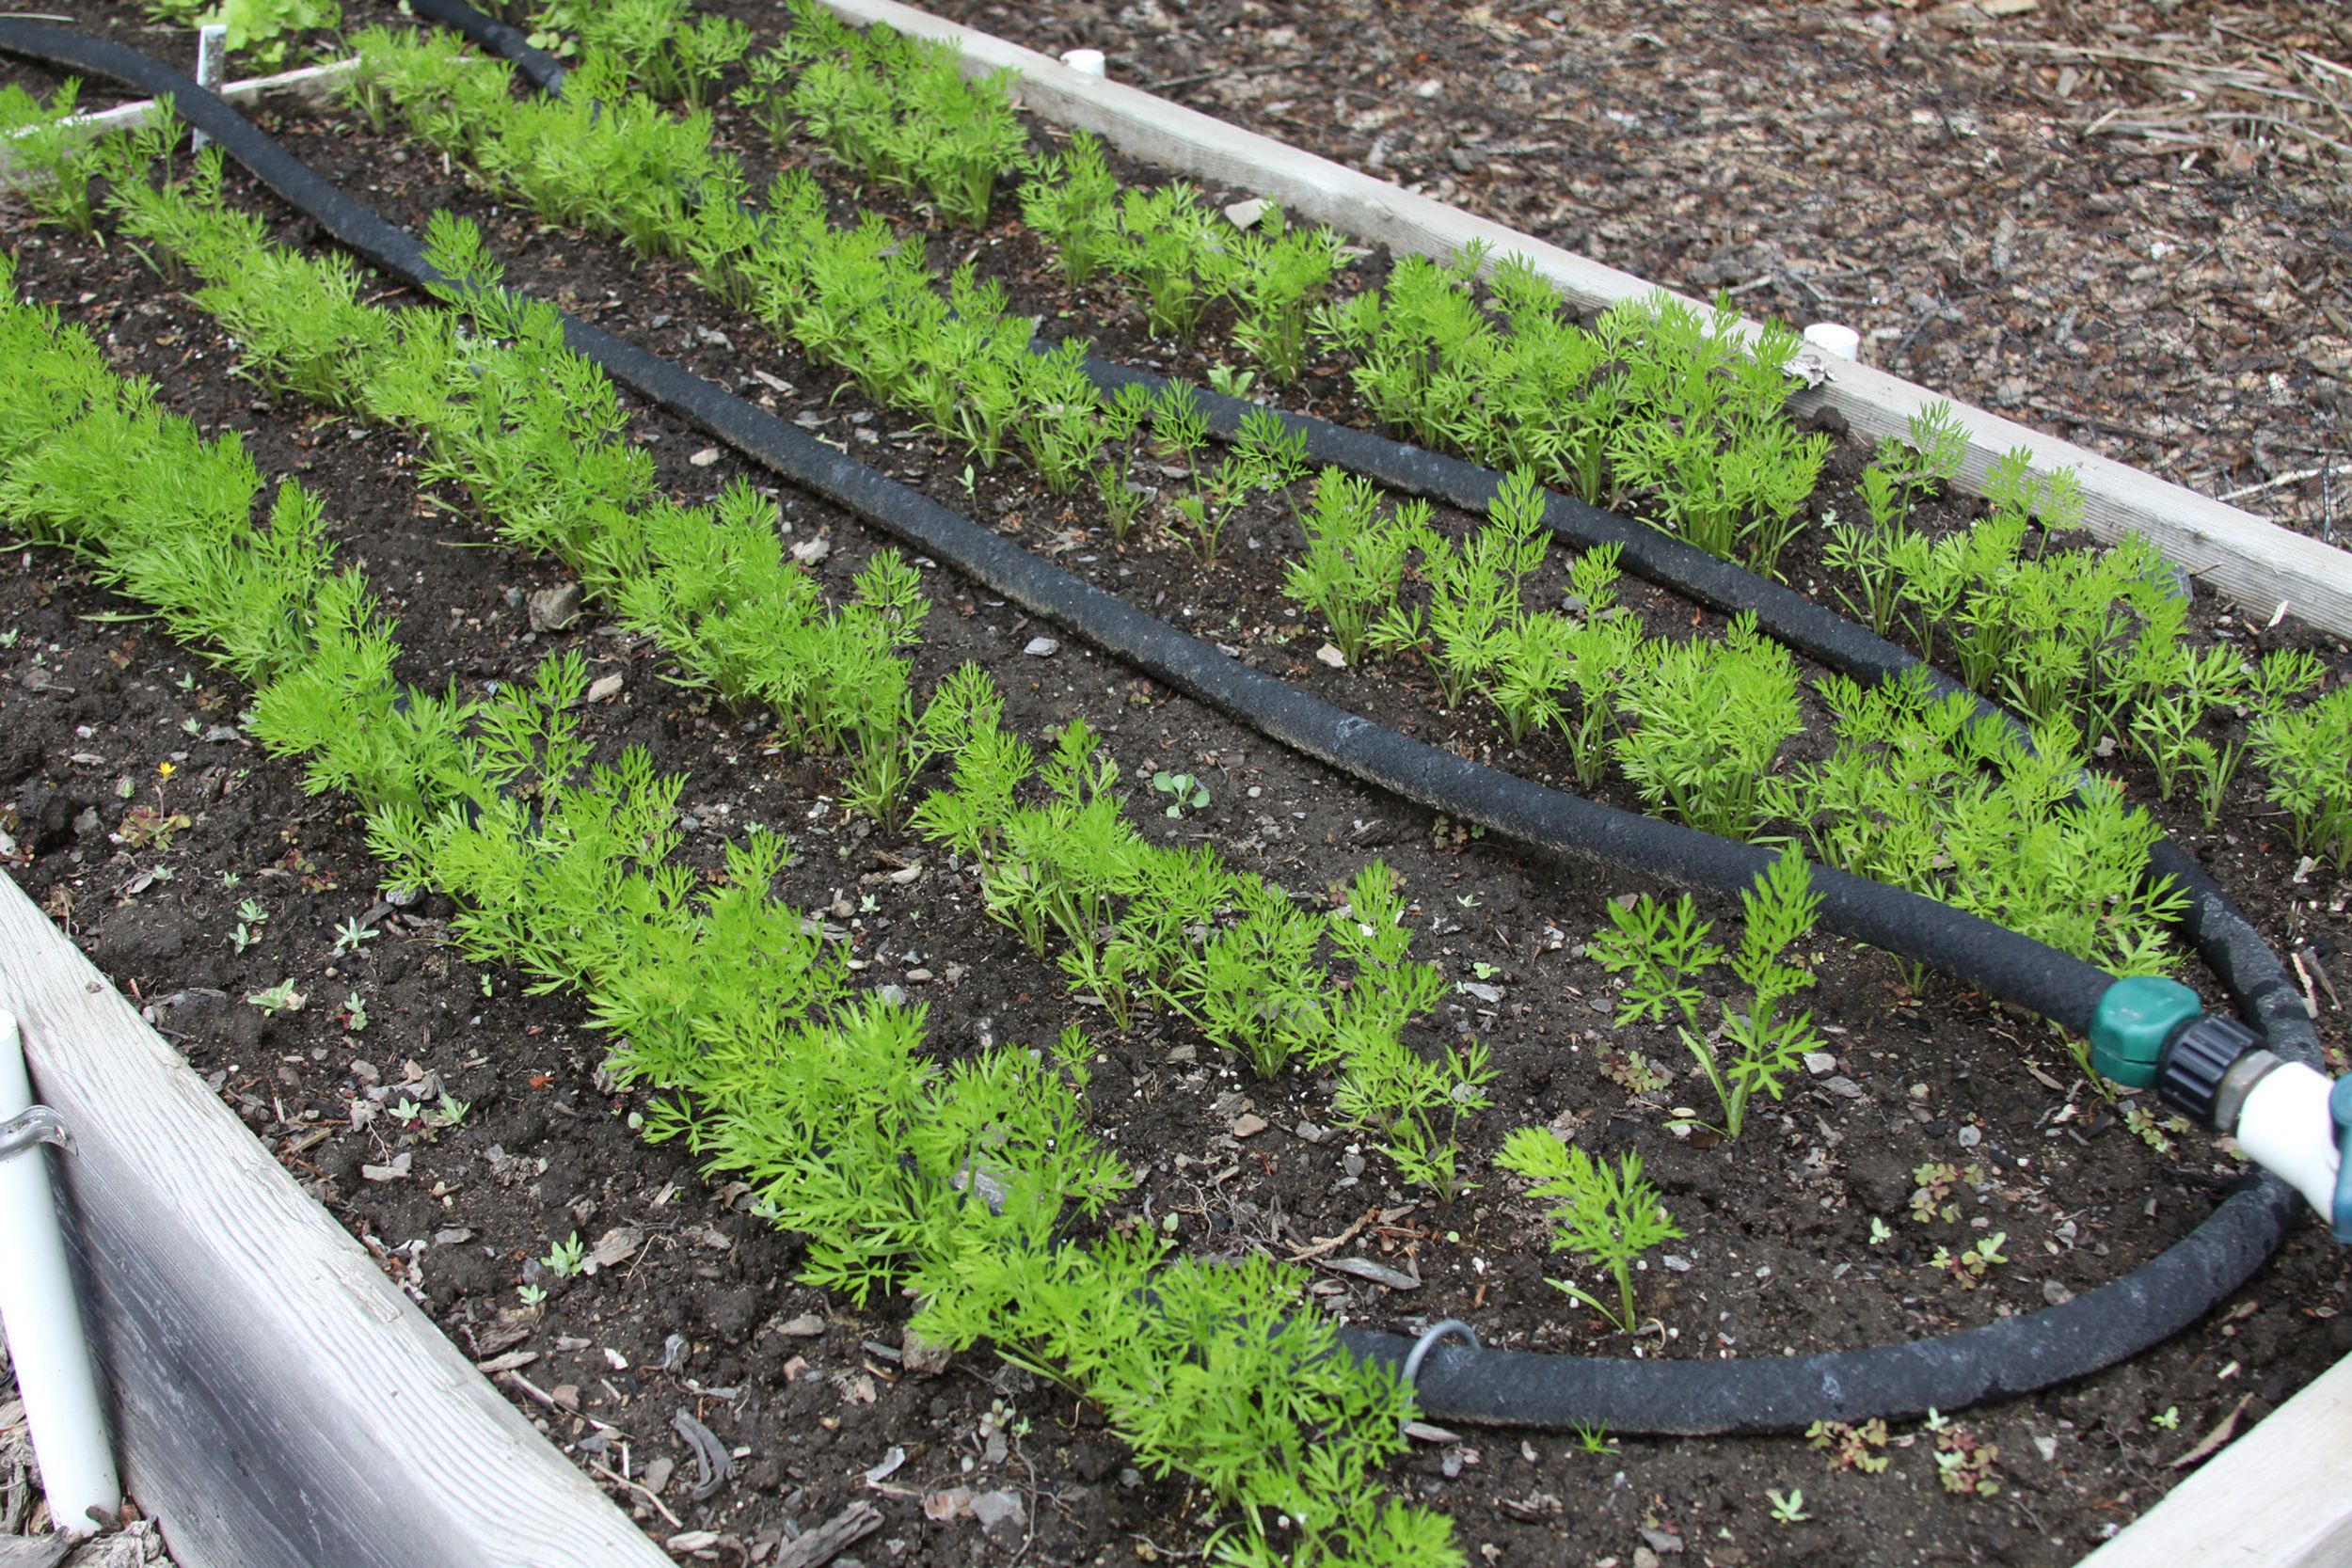 overwinter carrot seedlings